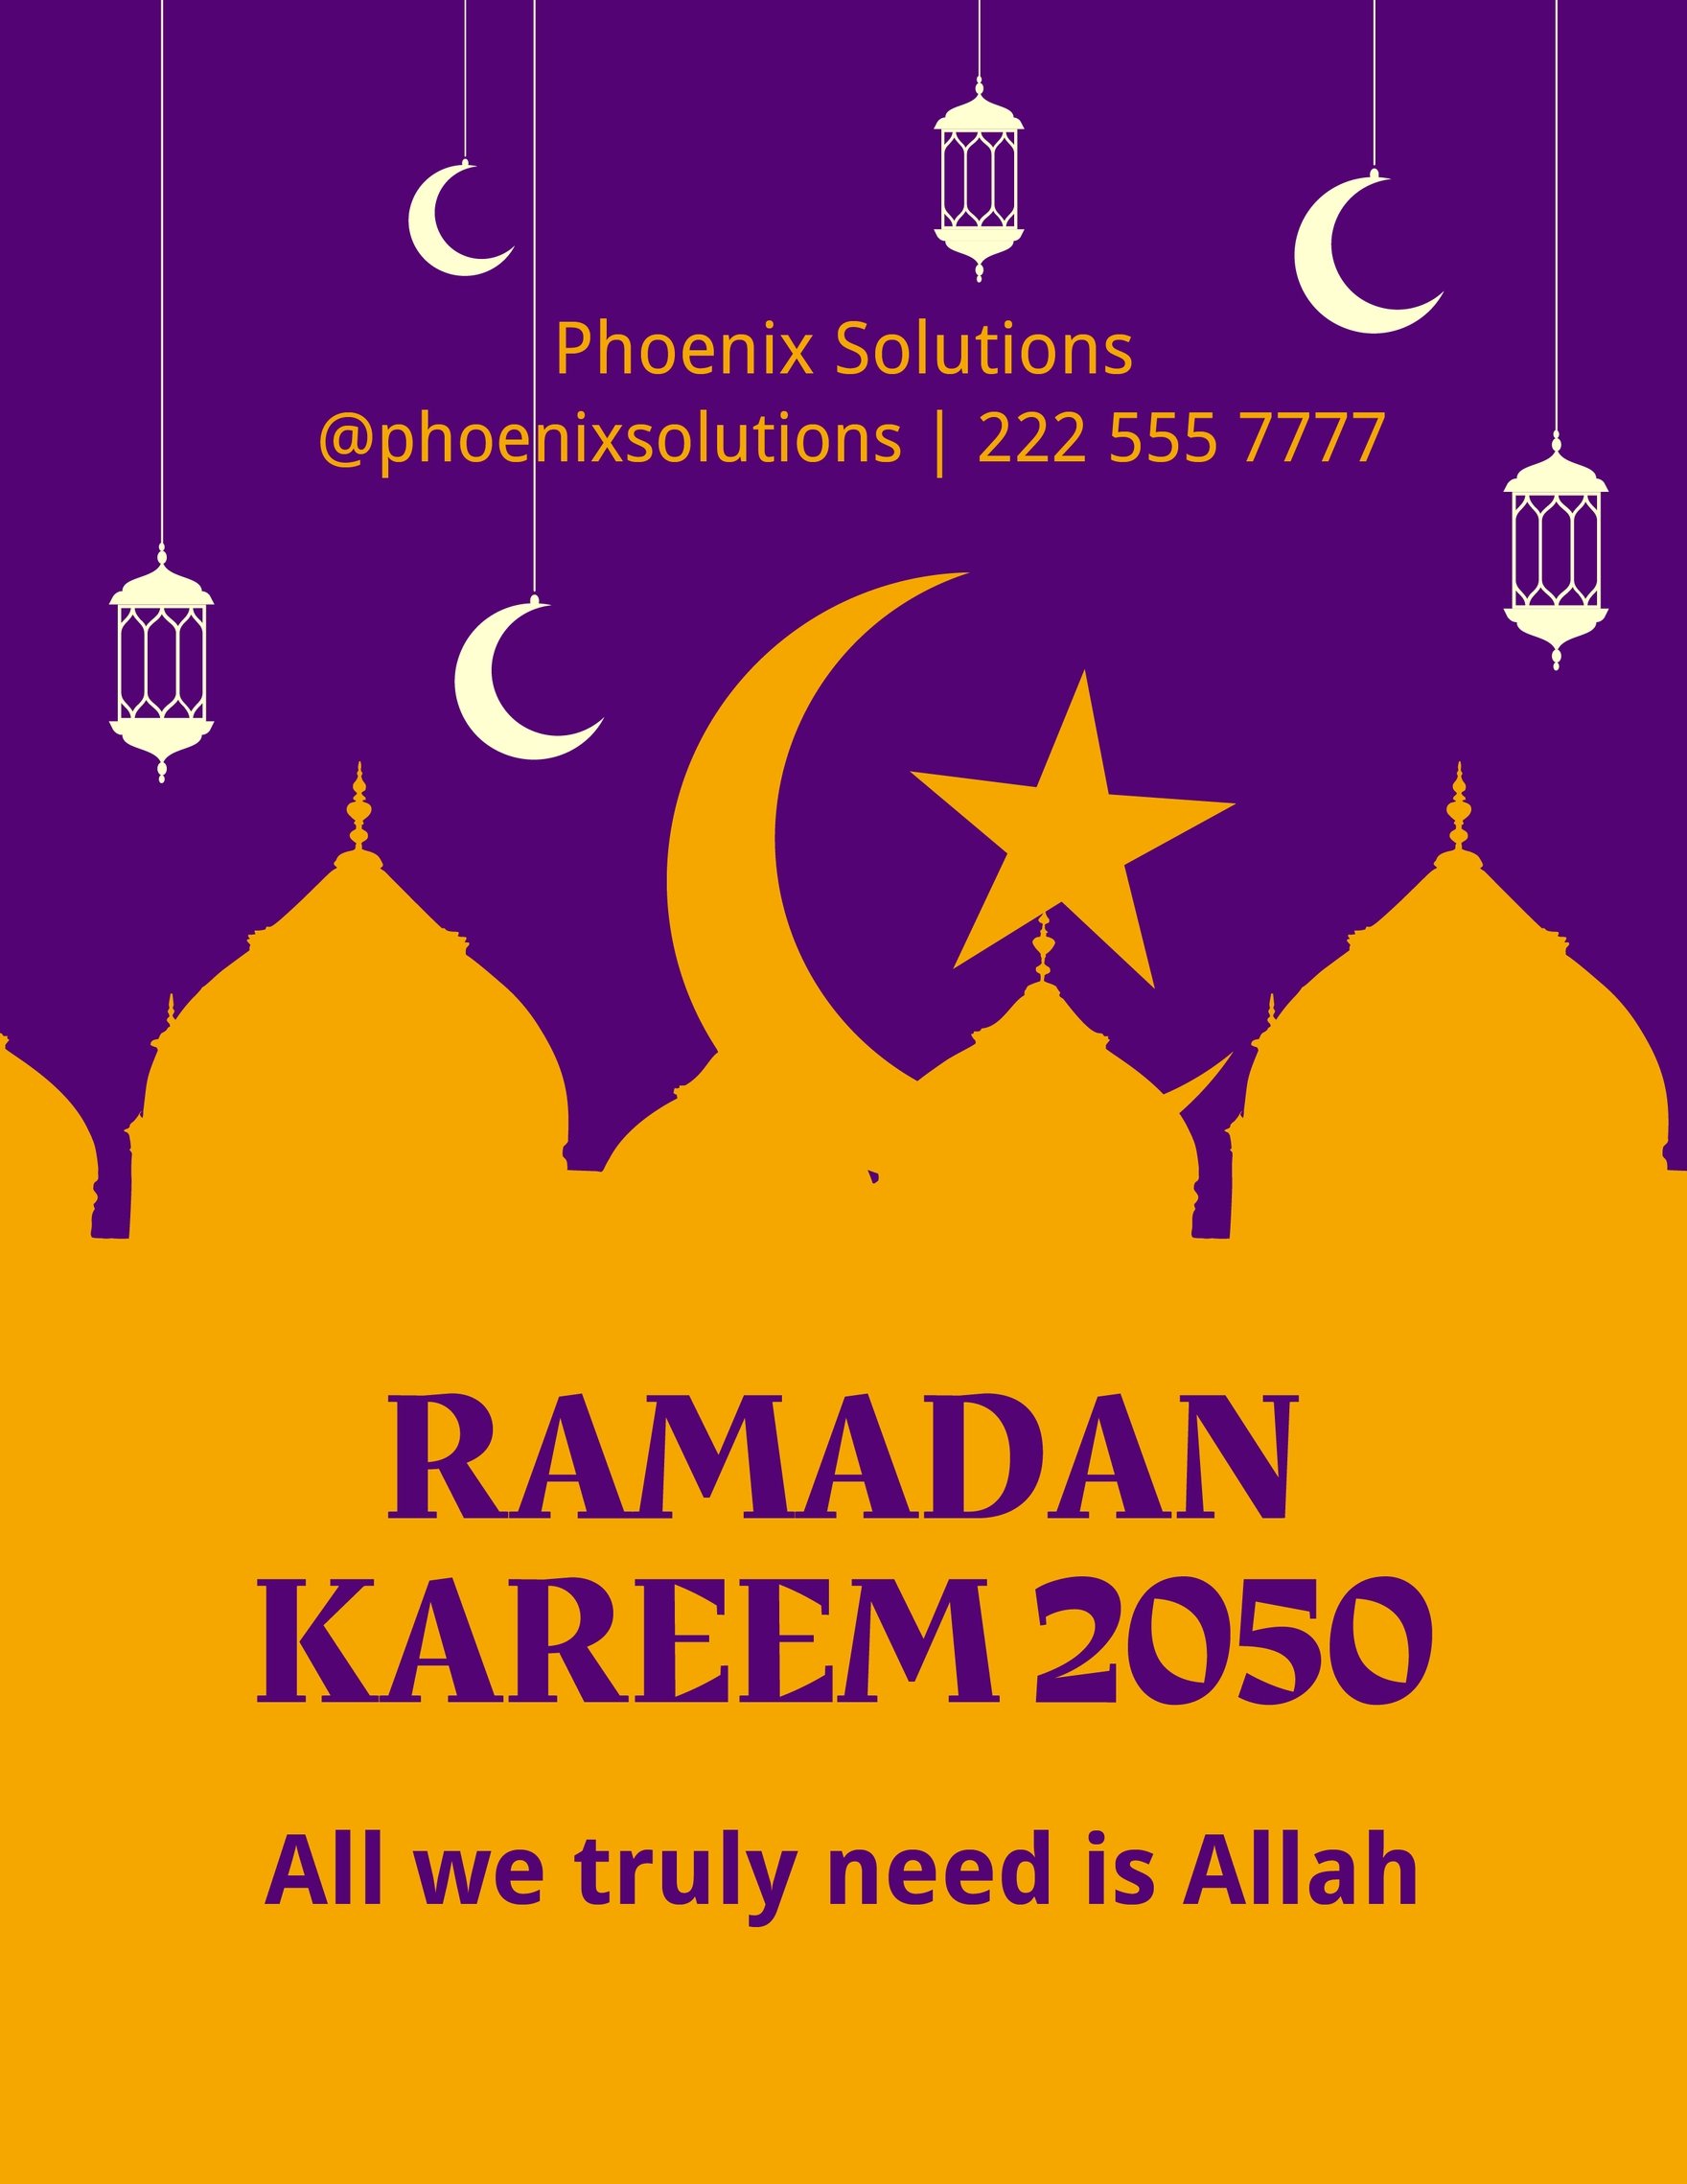 Ramadan Template in Word FREE Download